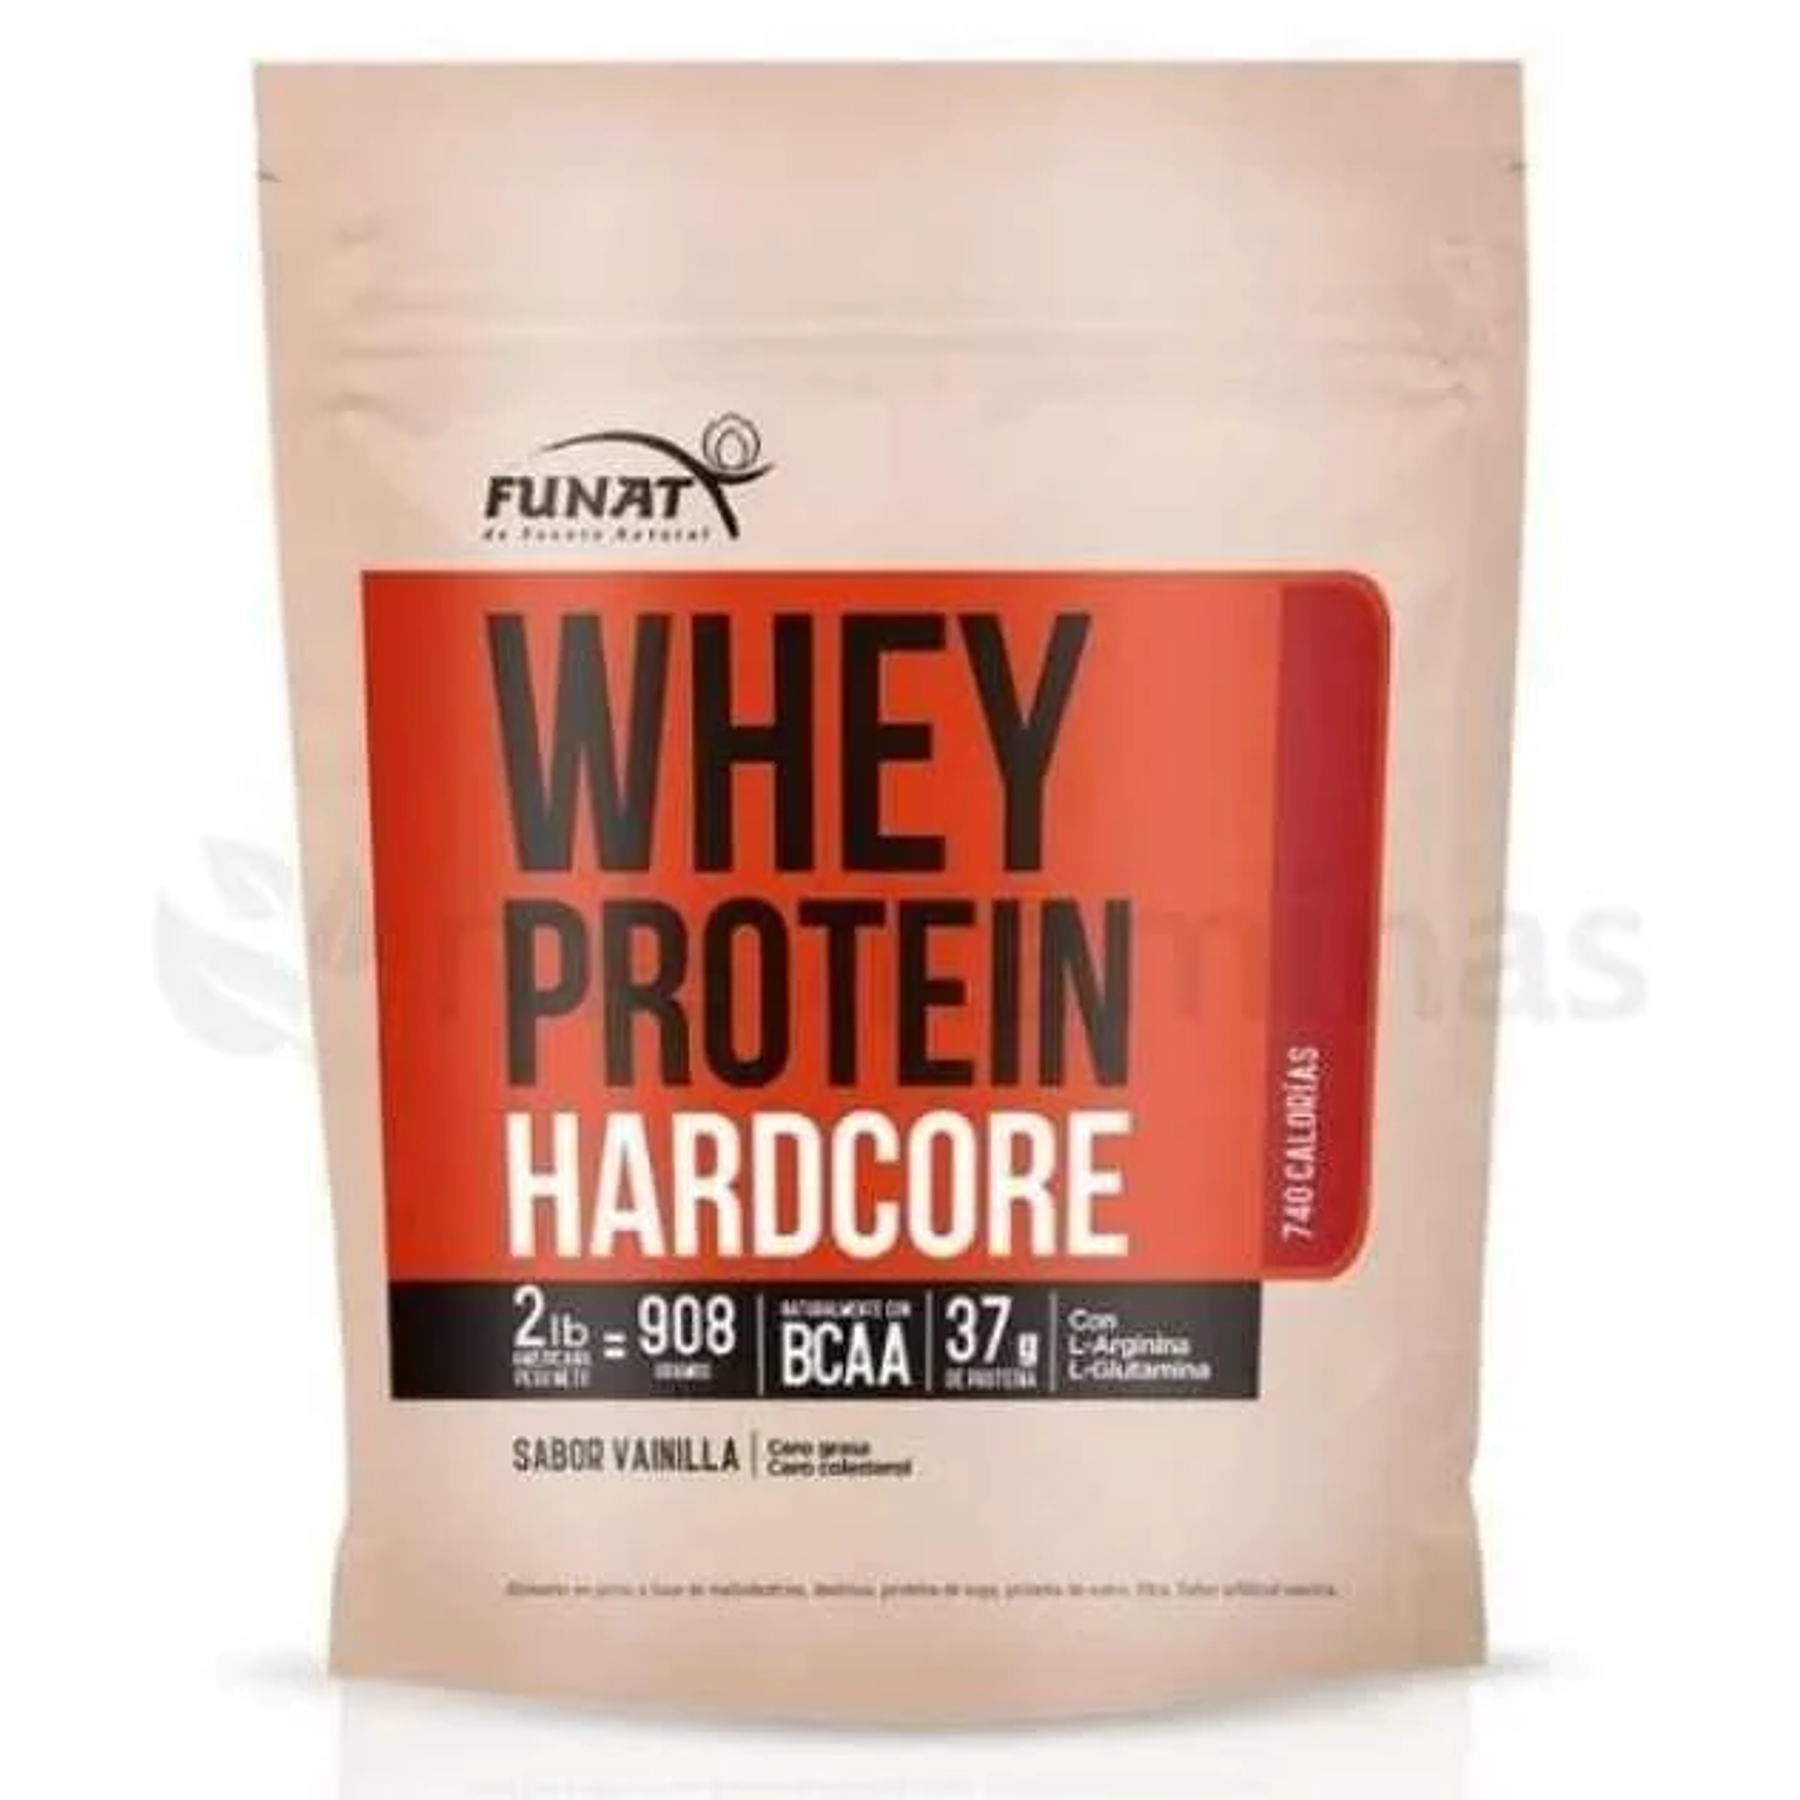 Whey Protein Hardcore Funat 2 libras